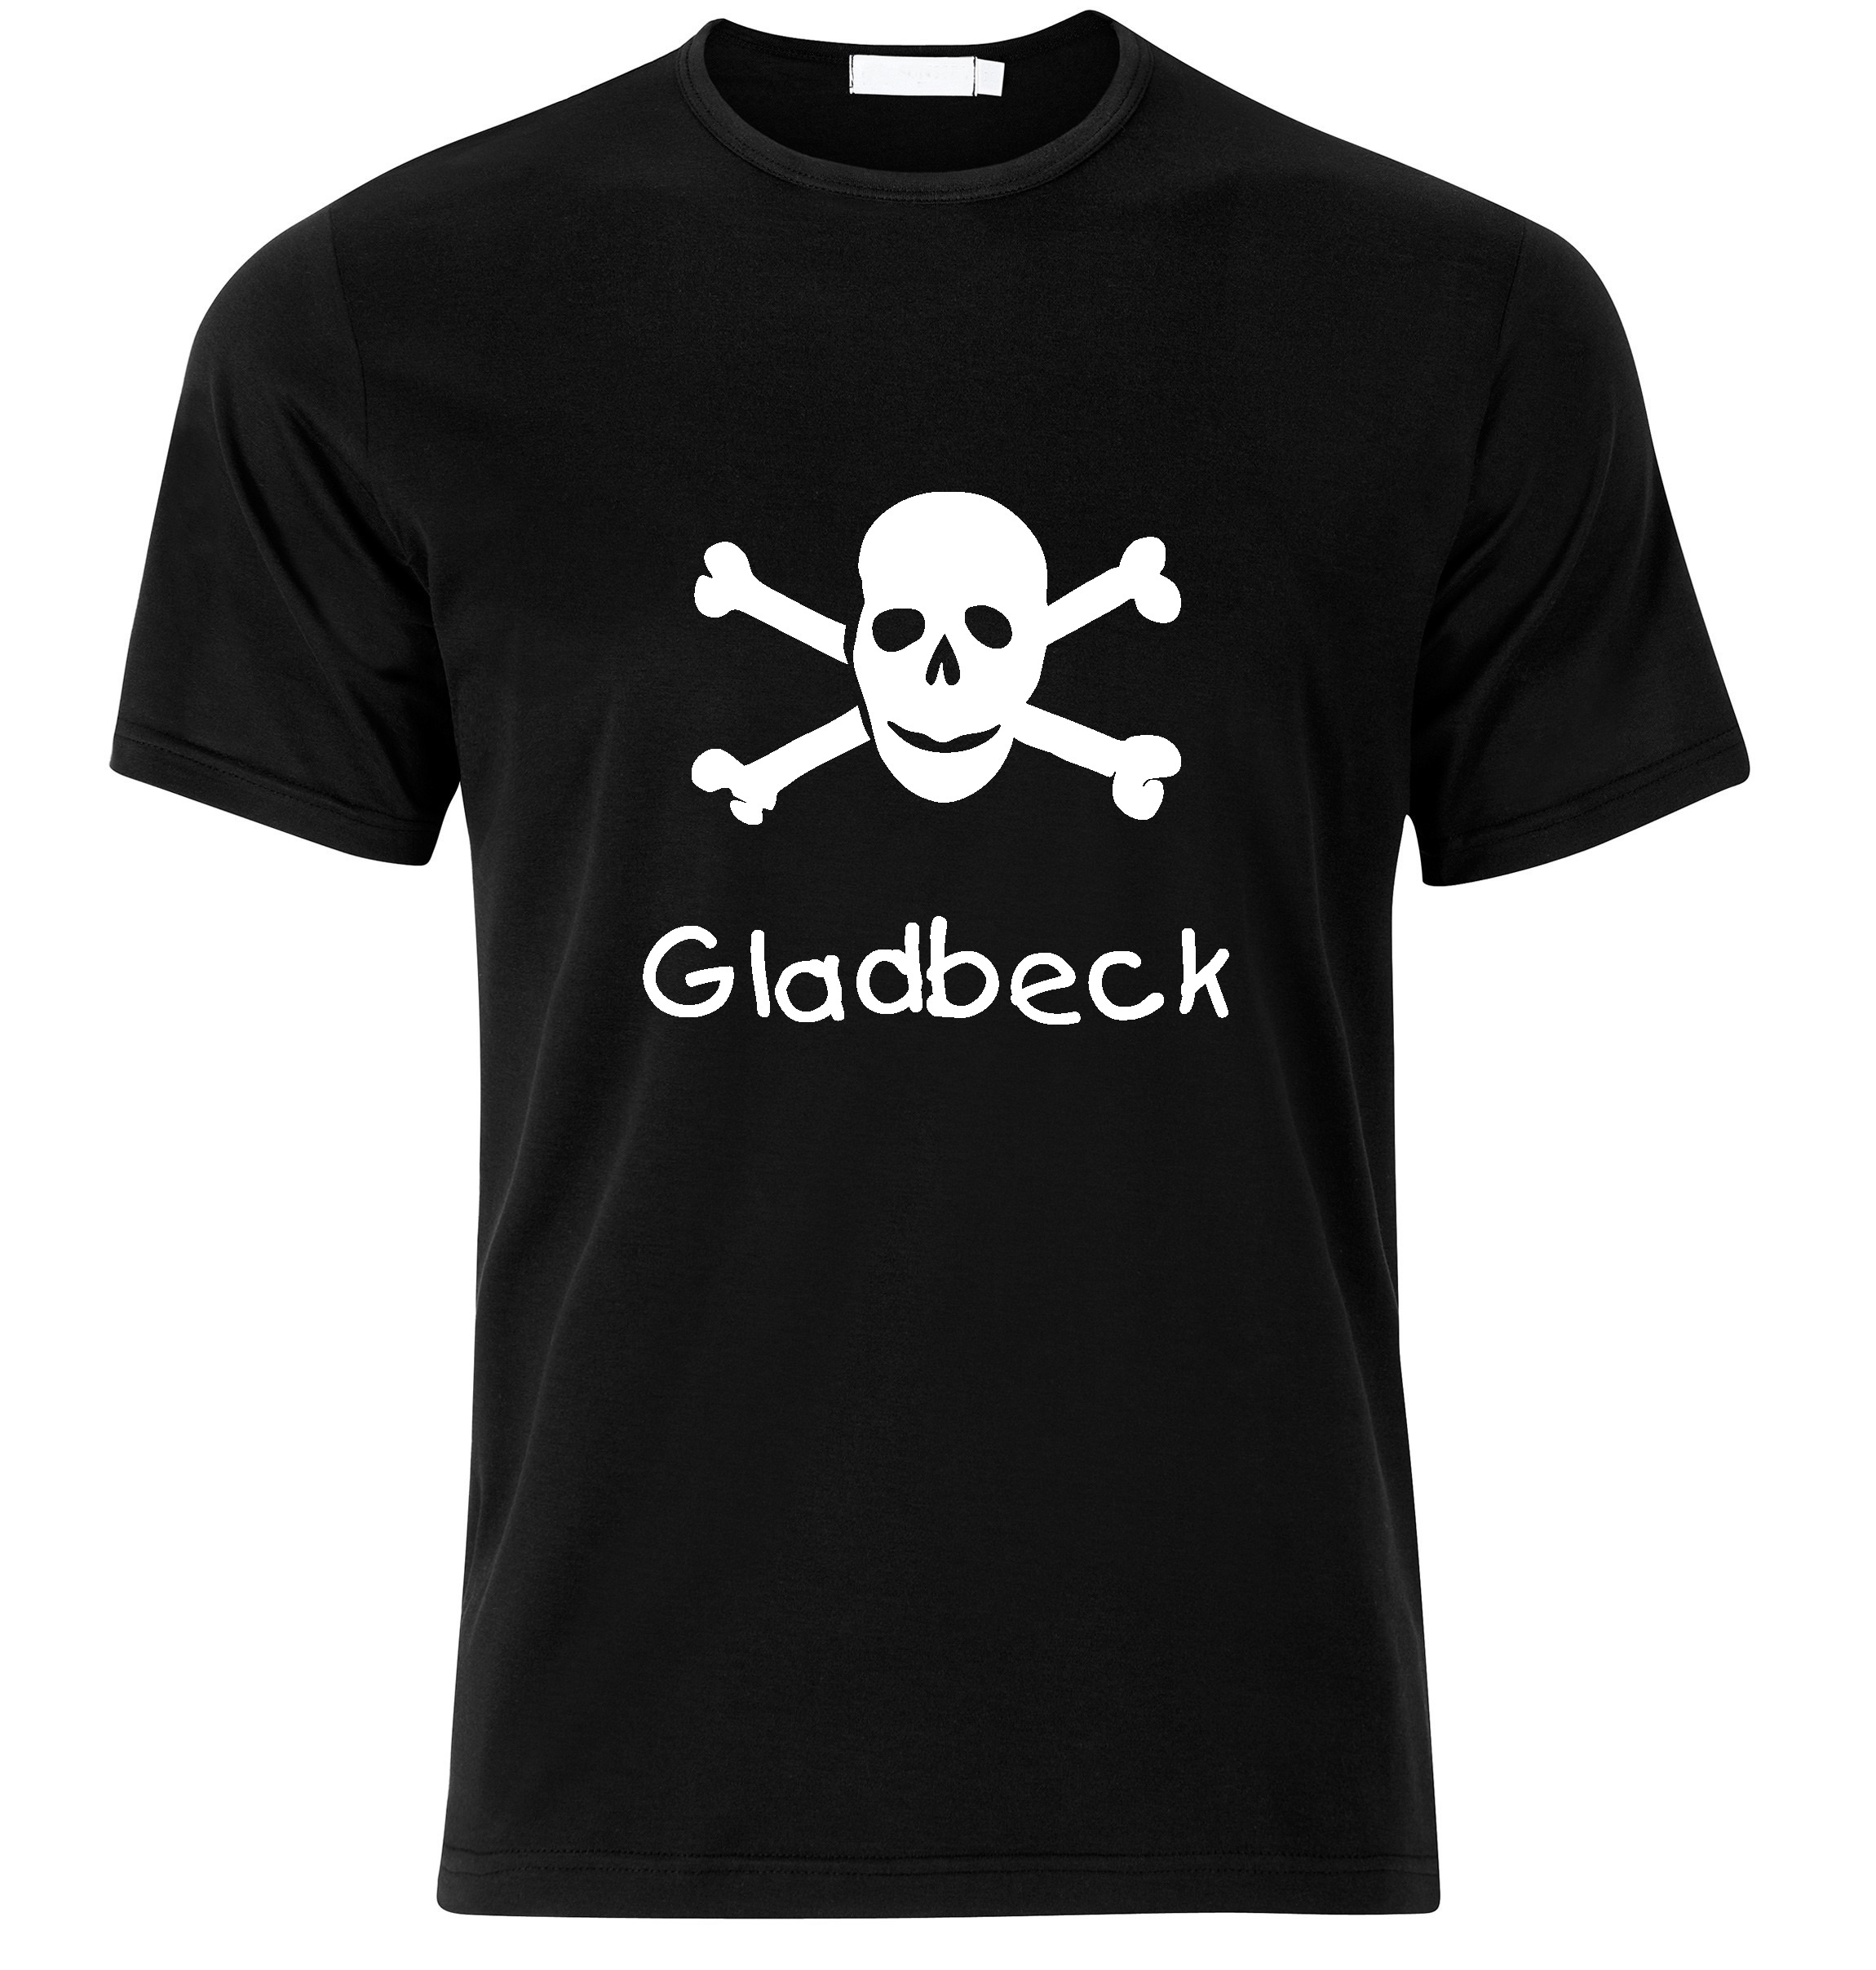 T-Shirt Gladbeck Jolly Roger, Totenkopf